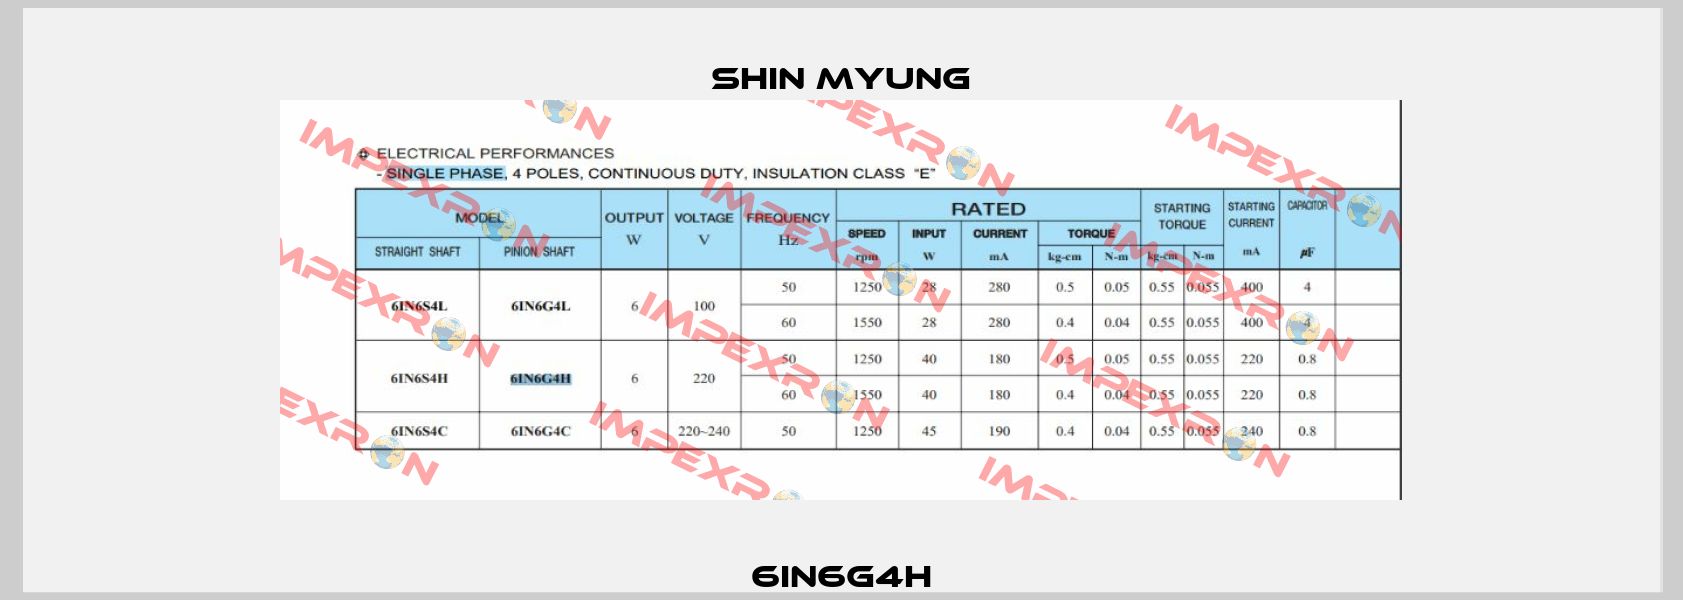 6IN6G4H Shin Myung